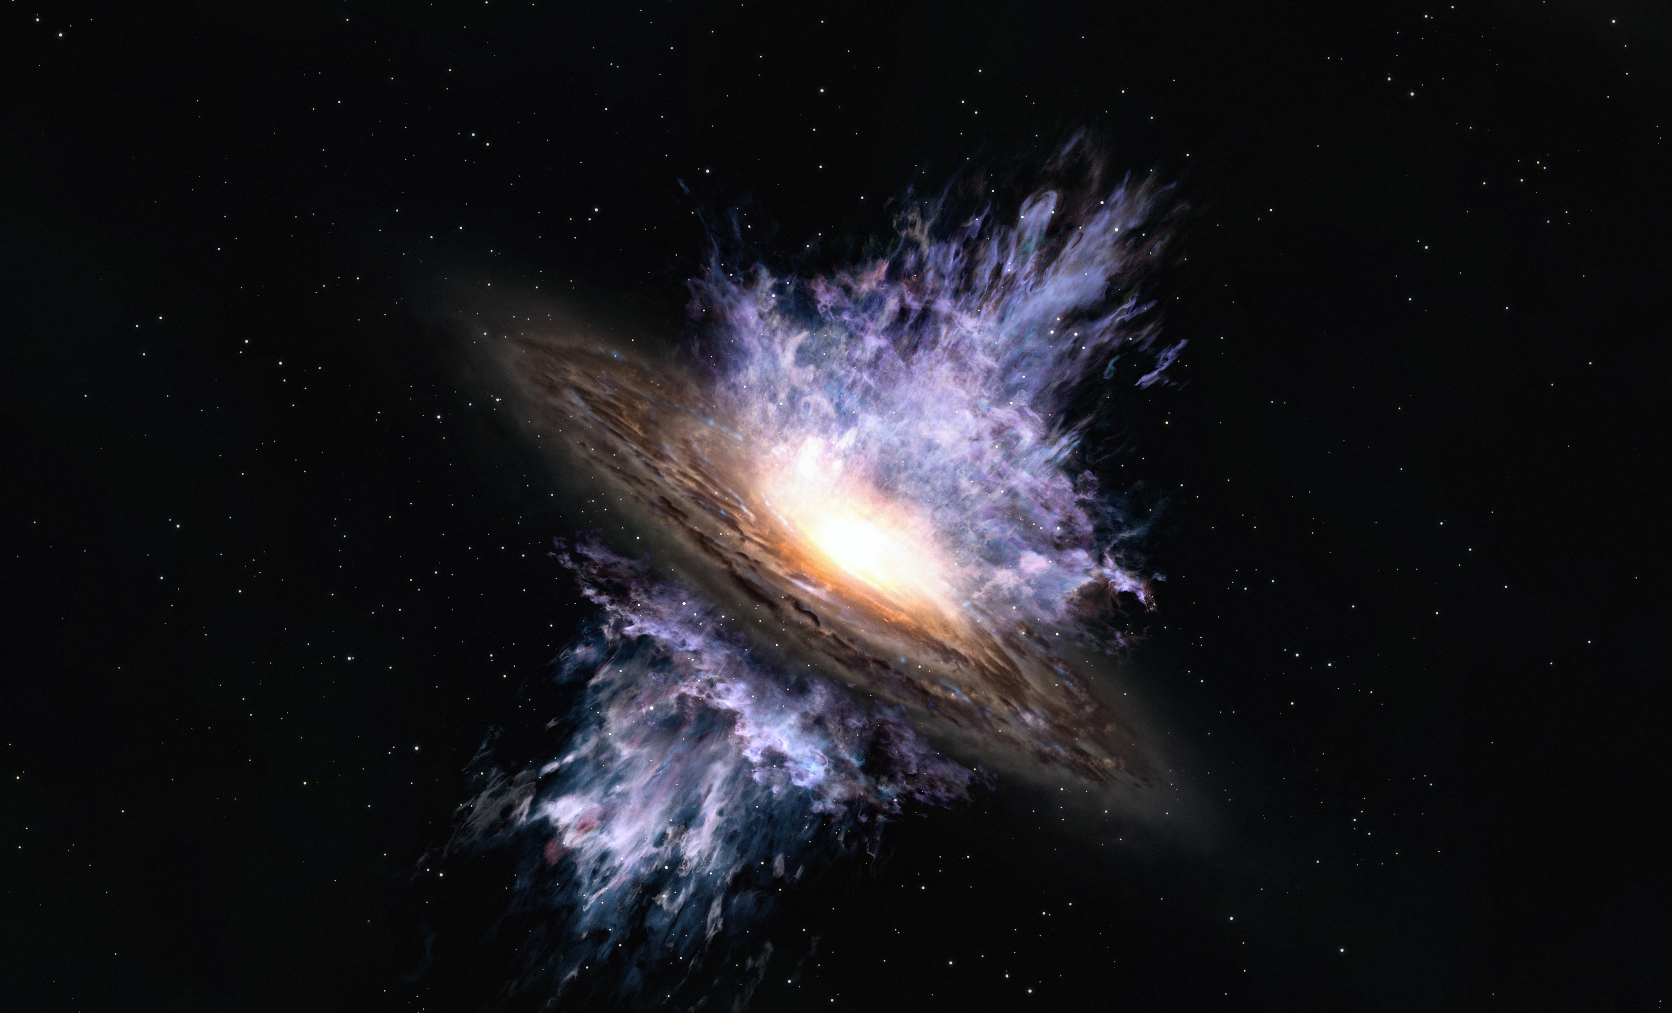 Vue d'artiste des vents galactiques produits par un trou noir supermassif situé au centre d'une galaxie. L'énergie intense émanant du trou noir crée un flux de gaz à l'échelle de la galaxie qui souffle la matière interstellaire qui est le matériau de formation des étoiles.&nbsp;© Alma&nbsp;(ESO / NAOJ / NRAO)